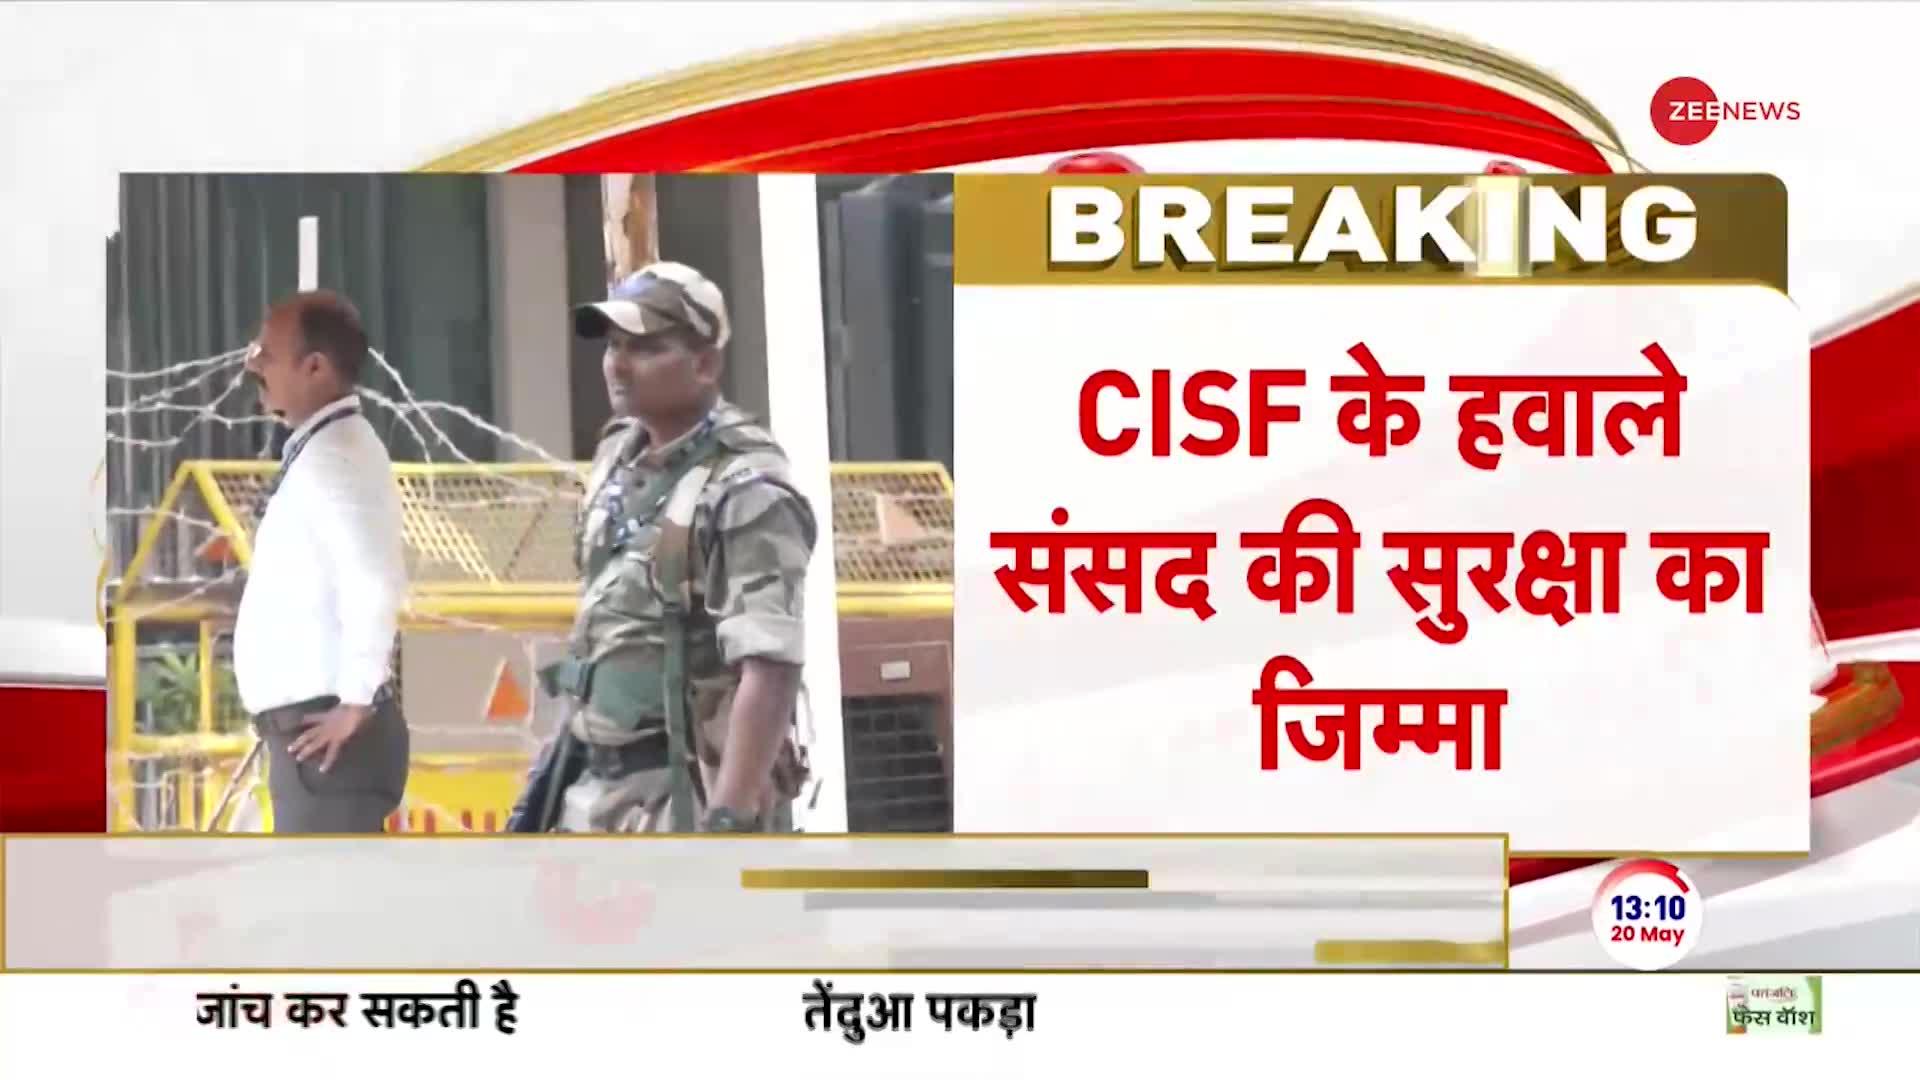 Breaking News: CISF के हवाले संसद की सुरक्षा का जिम्मा